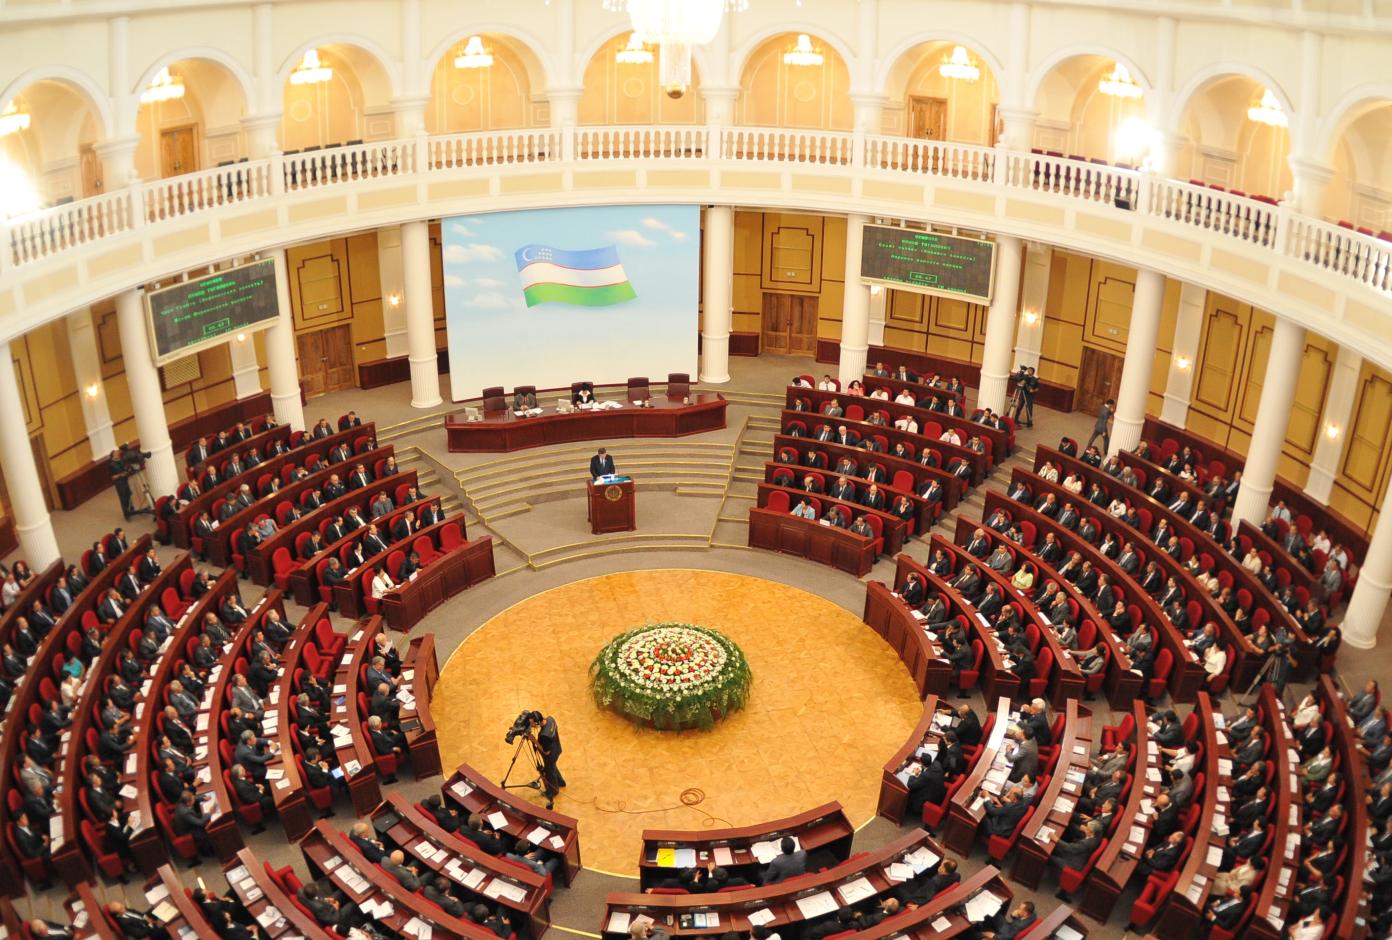 “Özbekistan ifade özgürlüğünü ihlal edecek yasayı geri çek!” Kaos GL - LGBTİ+ Haber Portalı